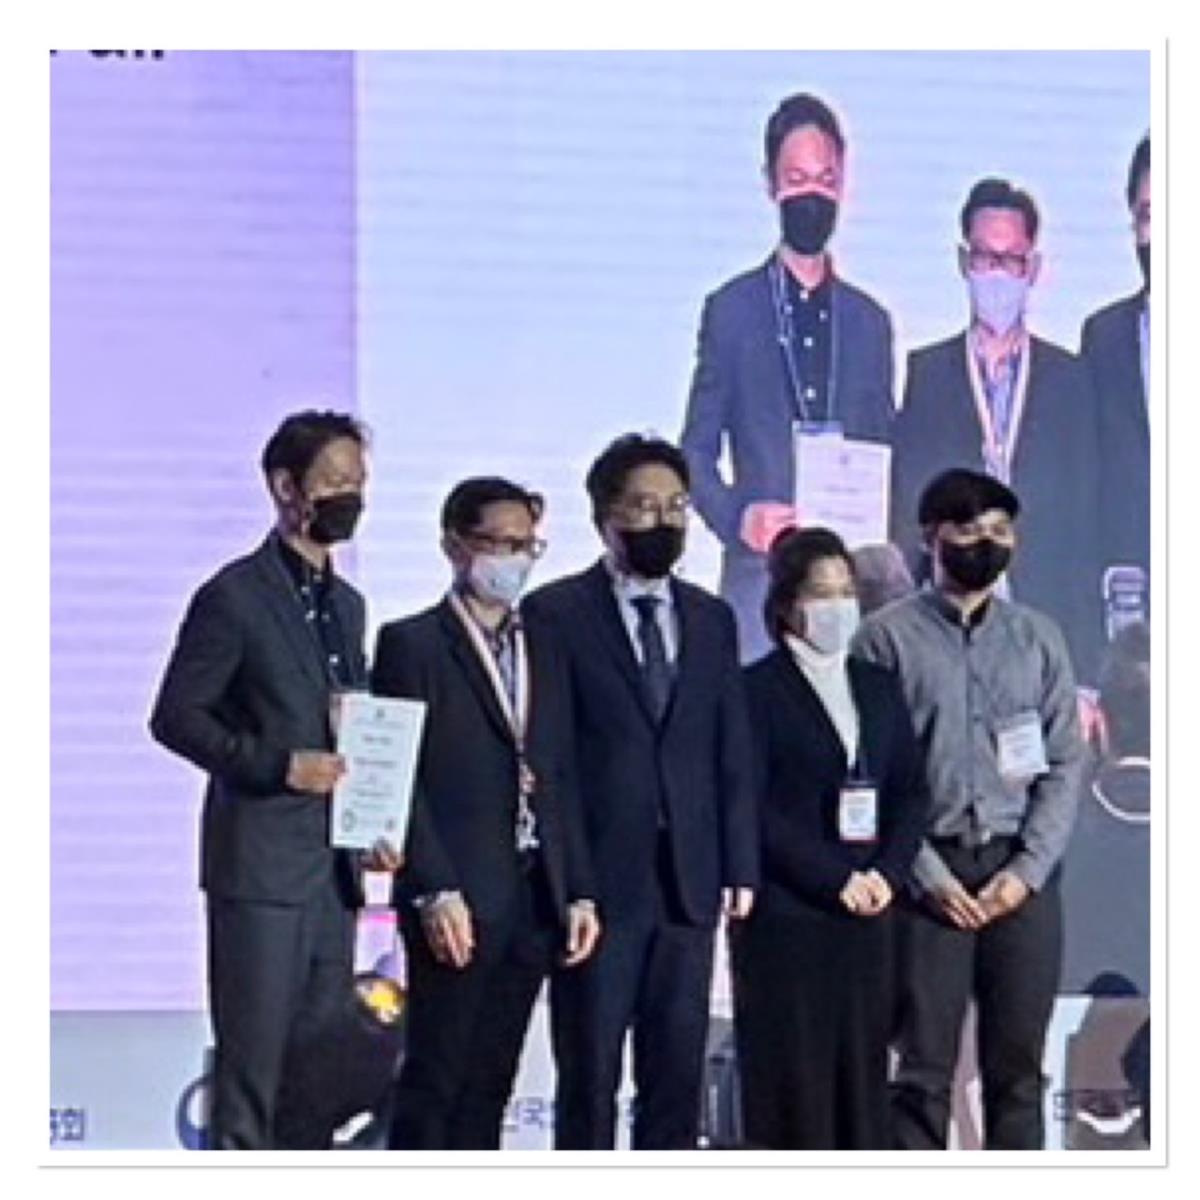 ทีมนักวิจัย อก.มช. คว้ารางวัล Bronze Prize for excellent efforts in creating invention จากงาน Seoul International Invention Fair 2022